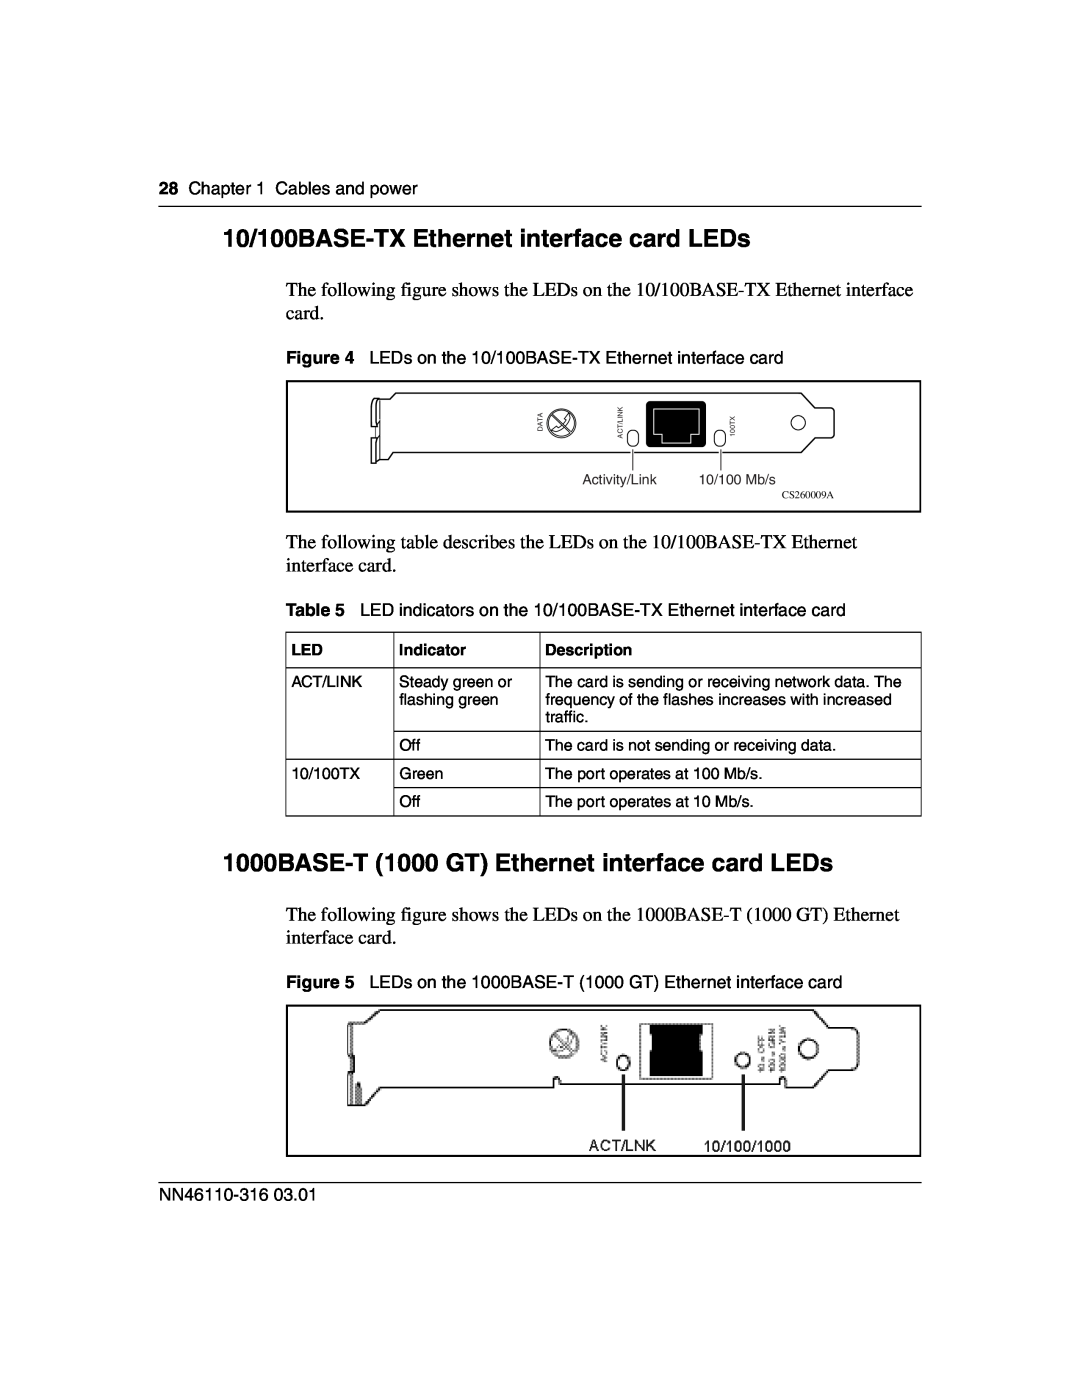 Nortel Networks 1750 manual 10/100BASE-TX Ethernet interface card LEDs, 1000BASE-T 1000 GT Ethernet interface card LEDs 